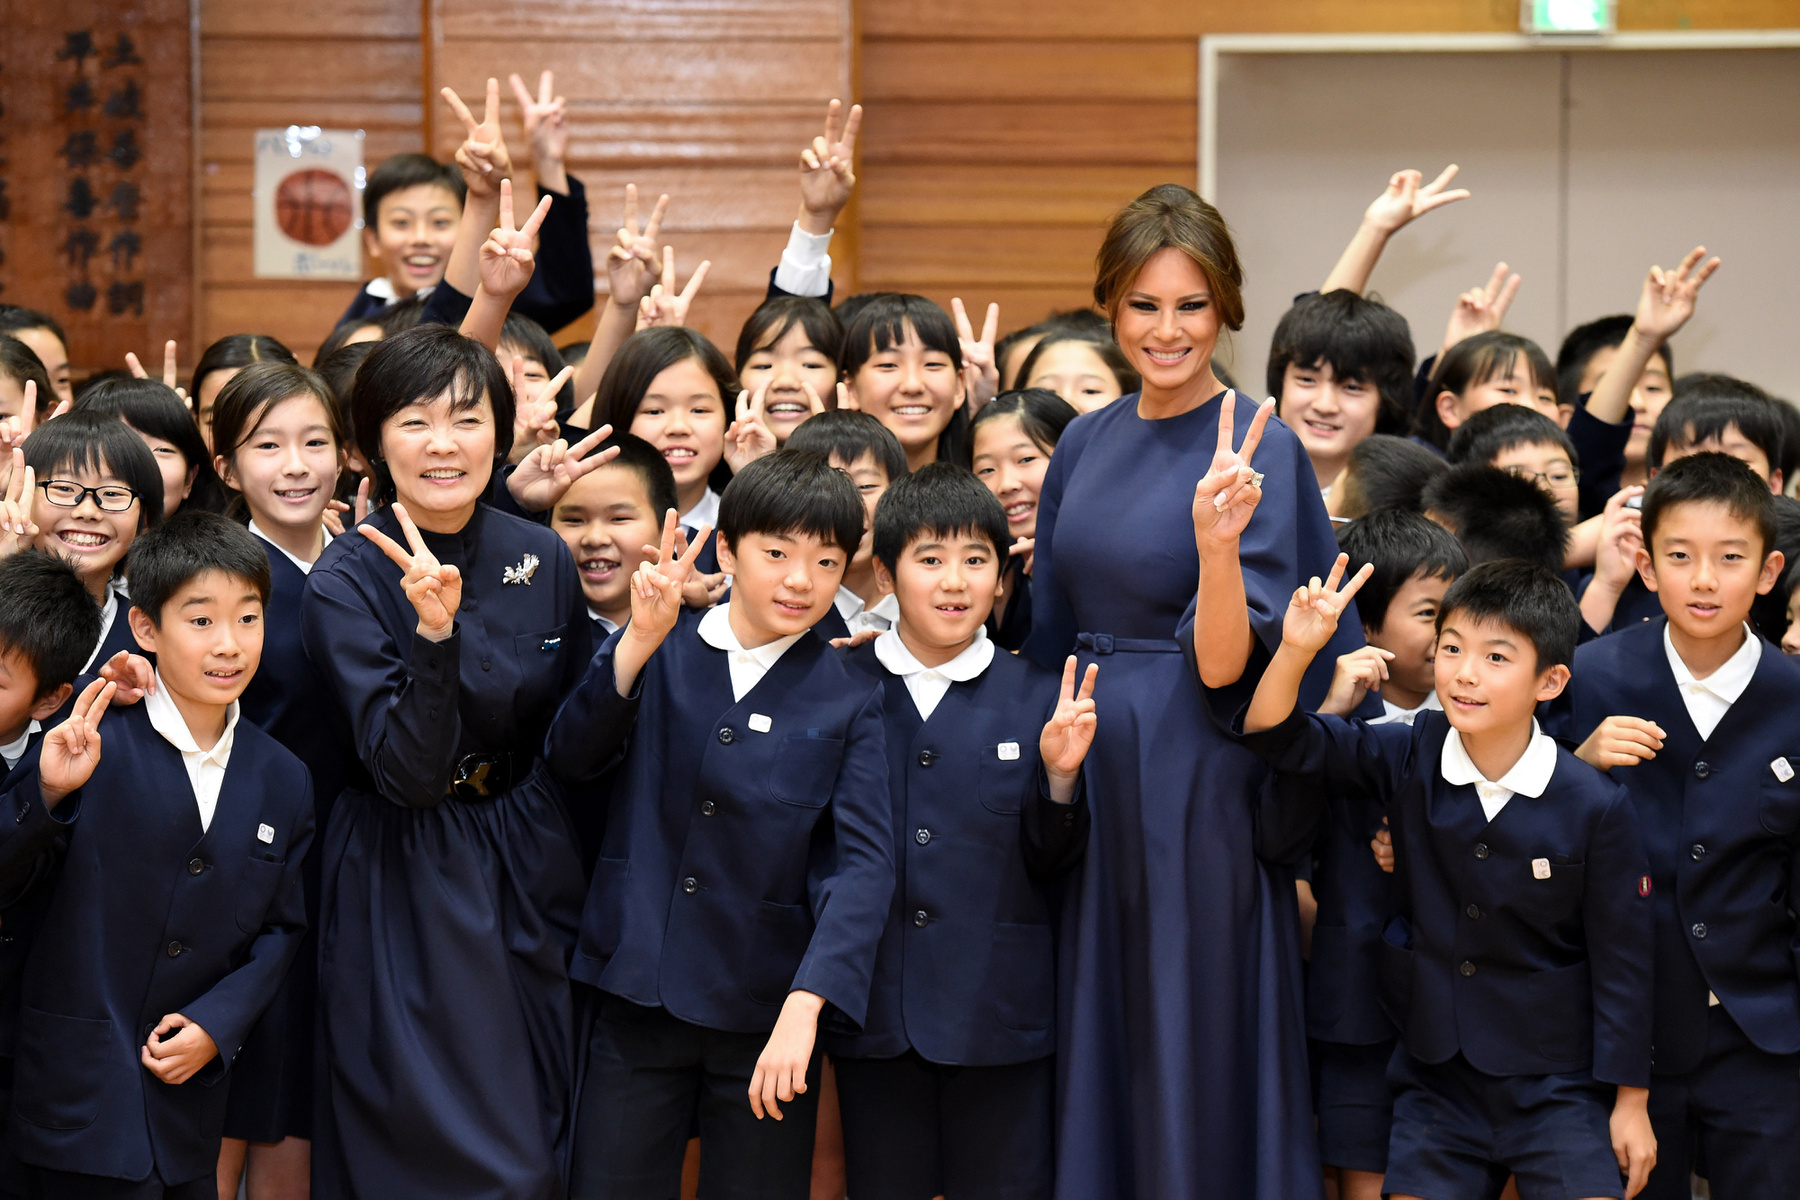 Ebben a vékony övvel átfogott sötétkék Dior ruhában látogatott meg egy tokiói általános iskolát. Az iskolaköpeny színéhez passzoló francia dizájner ruha 2657 fontba, kb.937 ezer forintba kerül a Diornál.

